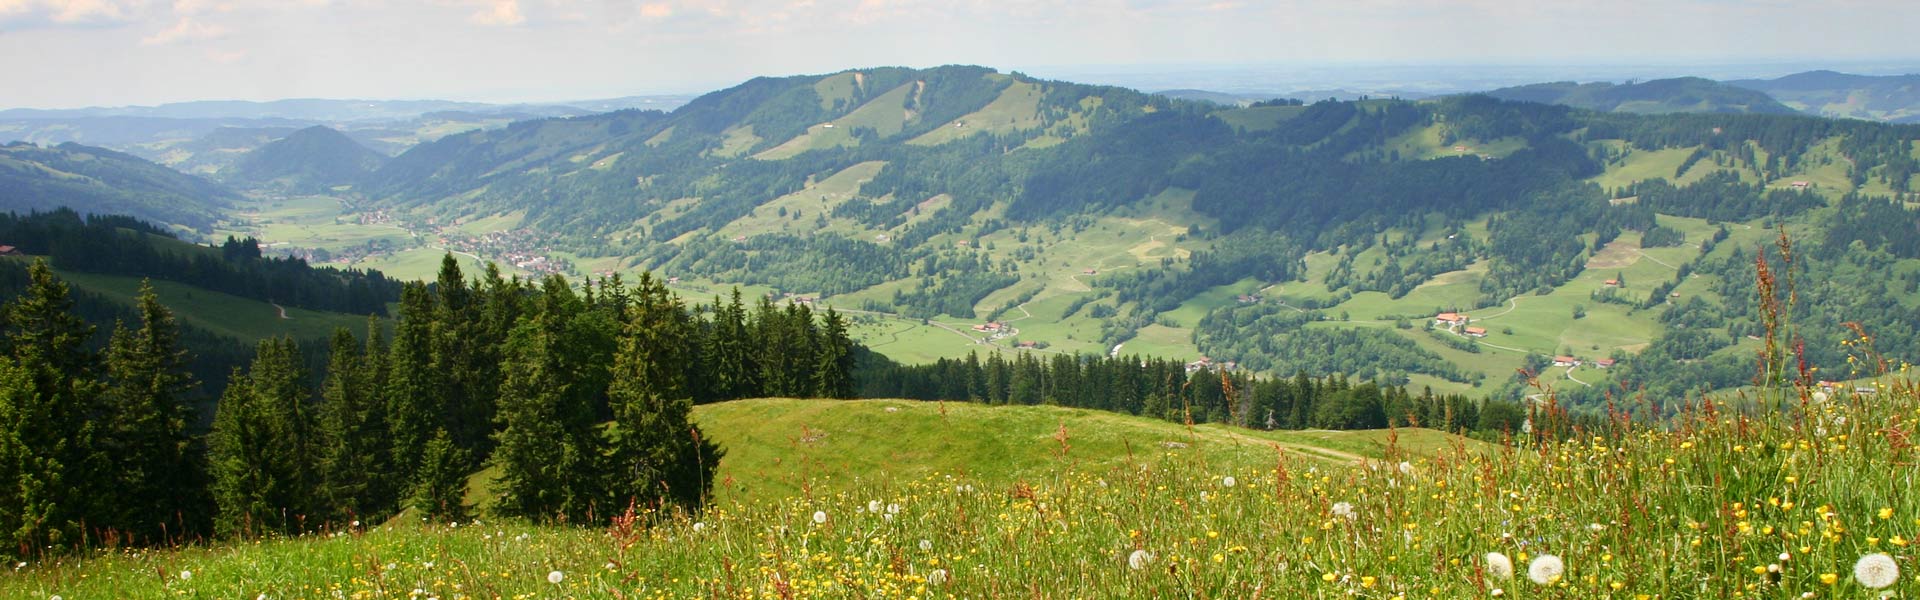 MTB Tour mit Blick auf den Alpsee, von Immenstadt über das Himmeleck zum Naturfreundehaus